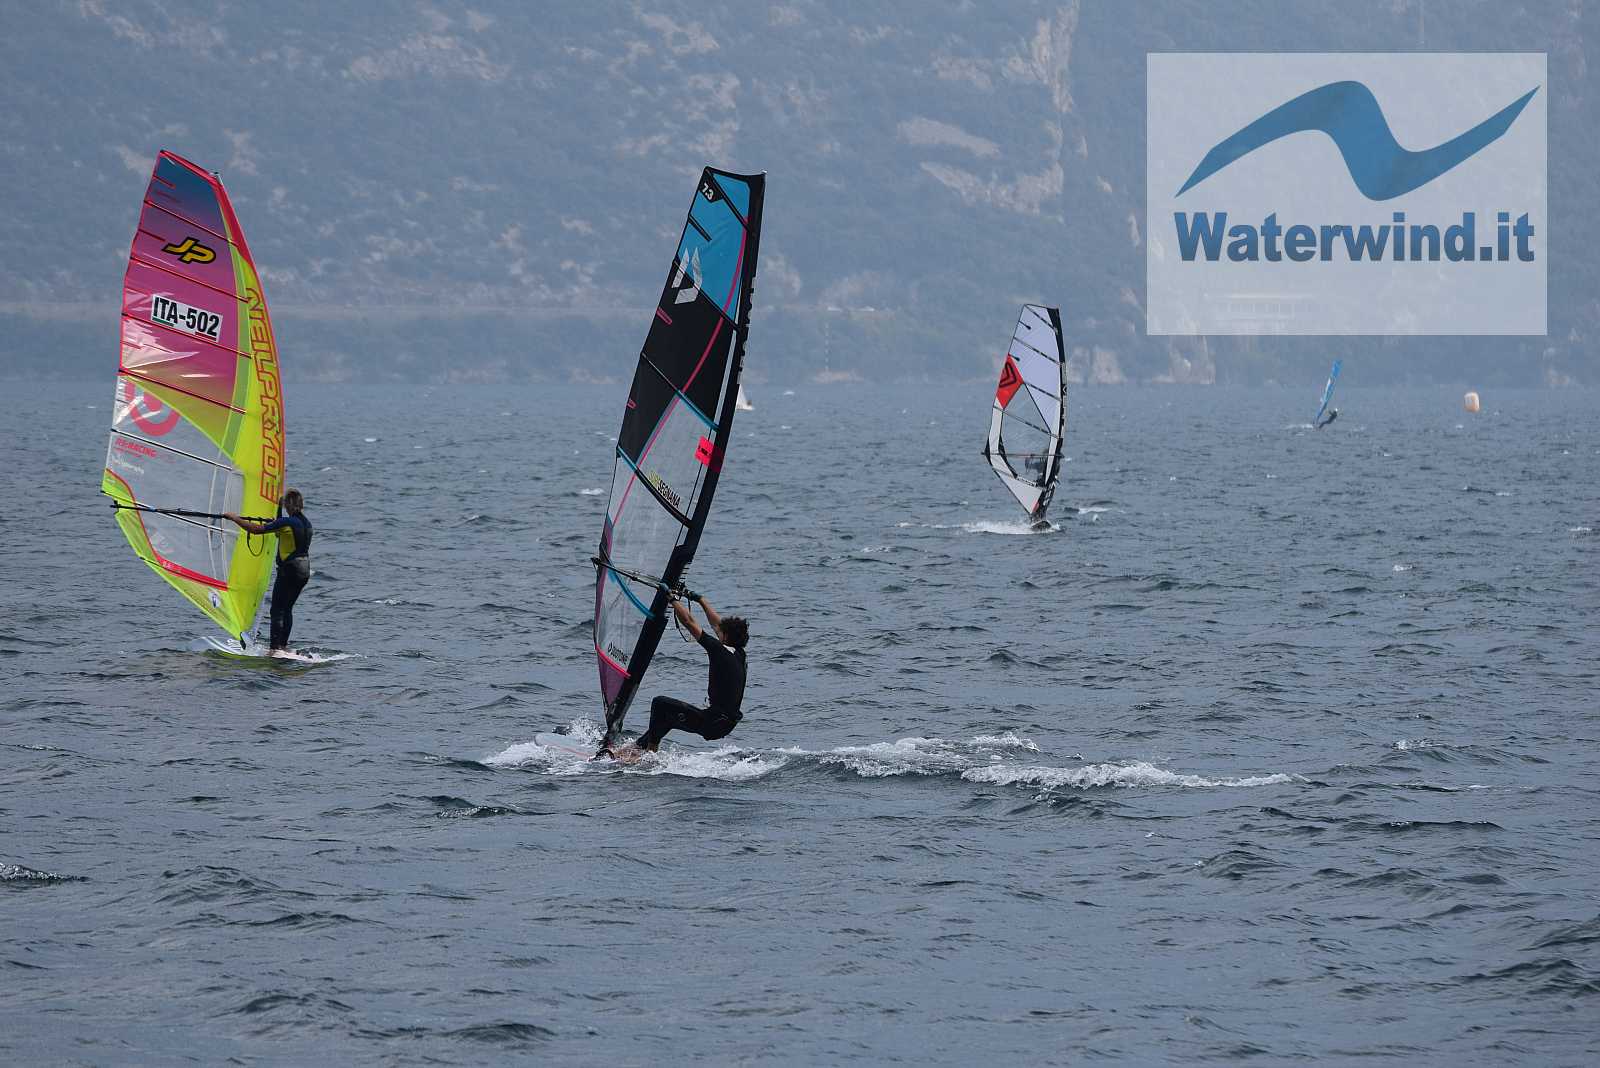 Prà de la Fam, and Pier (lake Garda), 12/10/2019